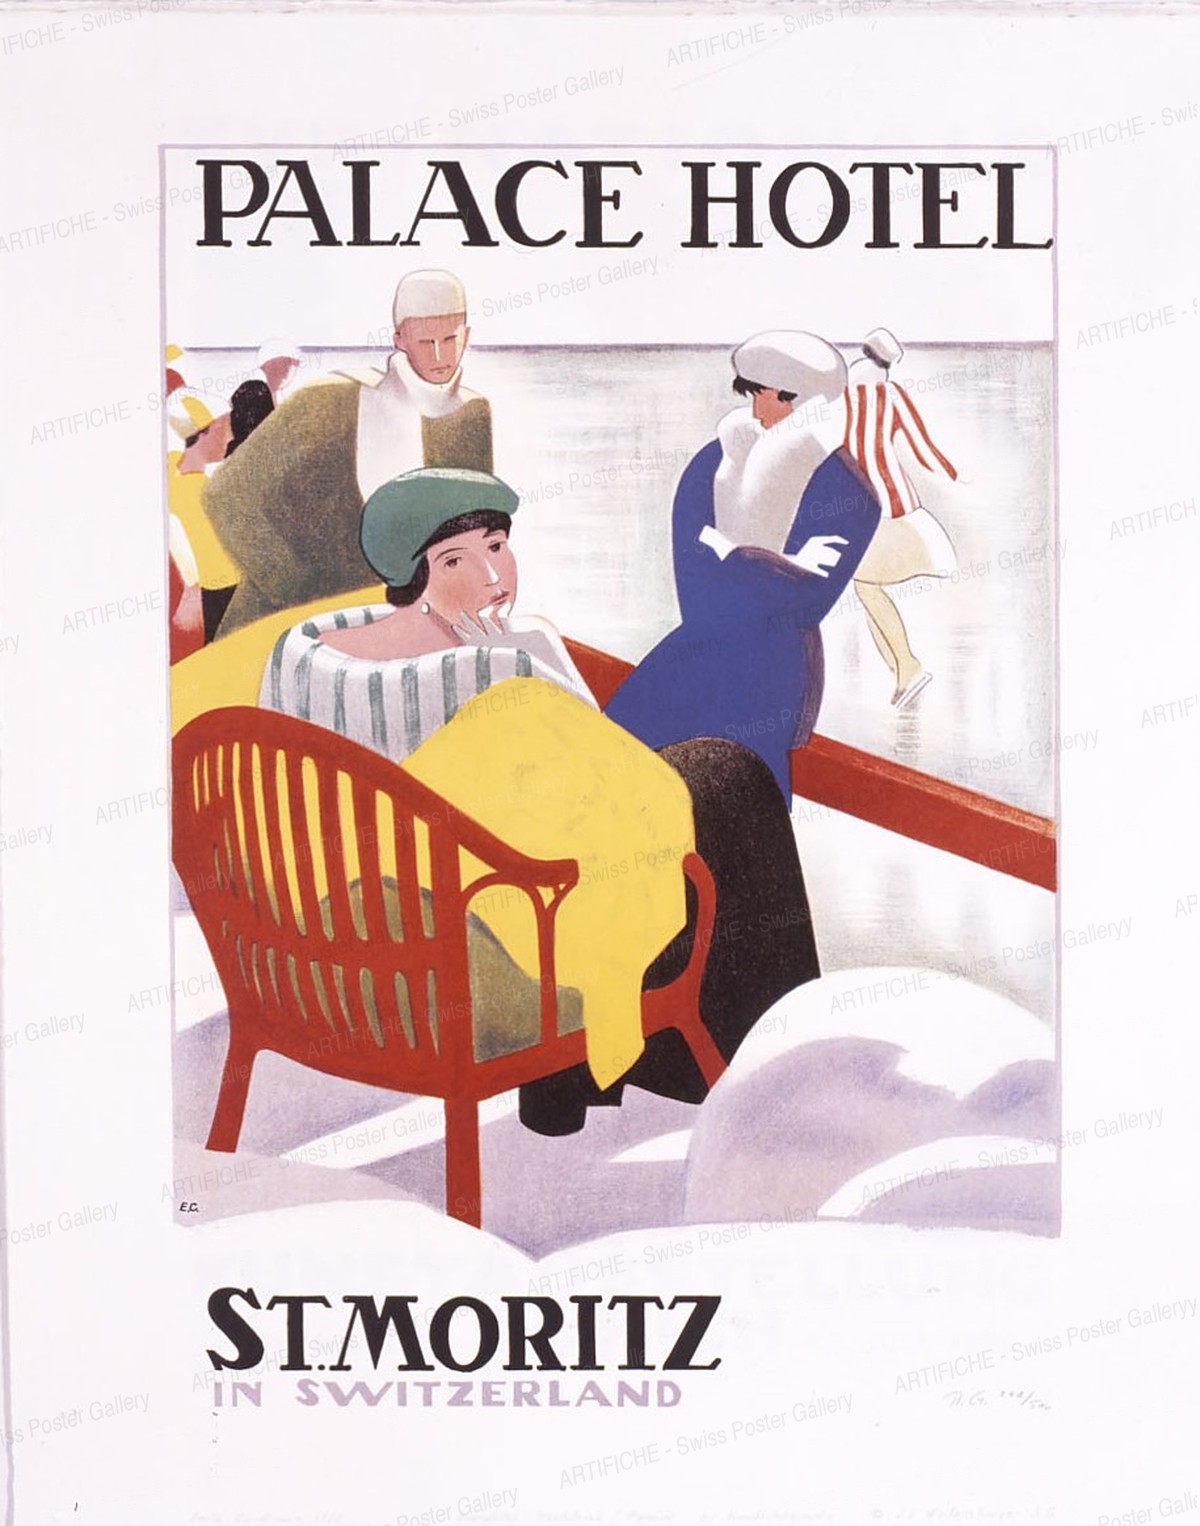 Palace Hotel St. Moritz Switzerland, Cardinaux, Emil, d‘après